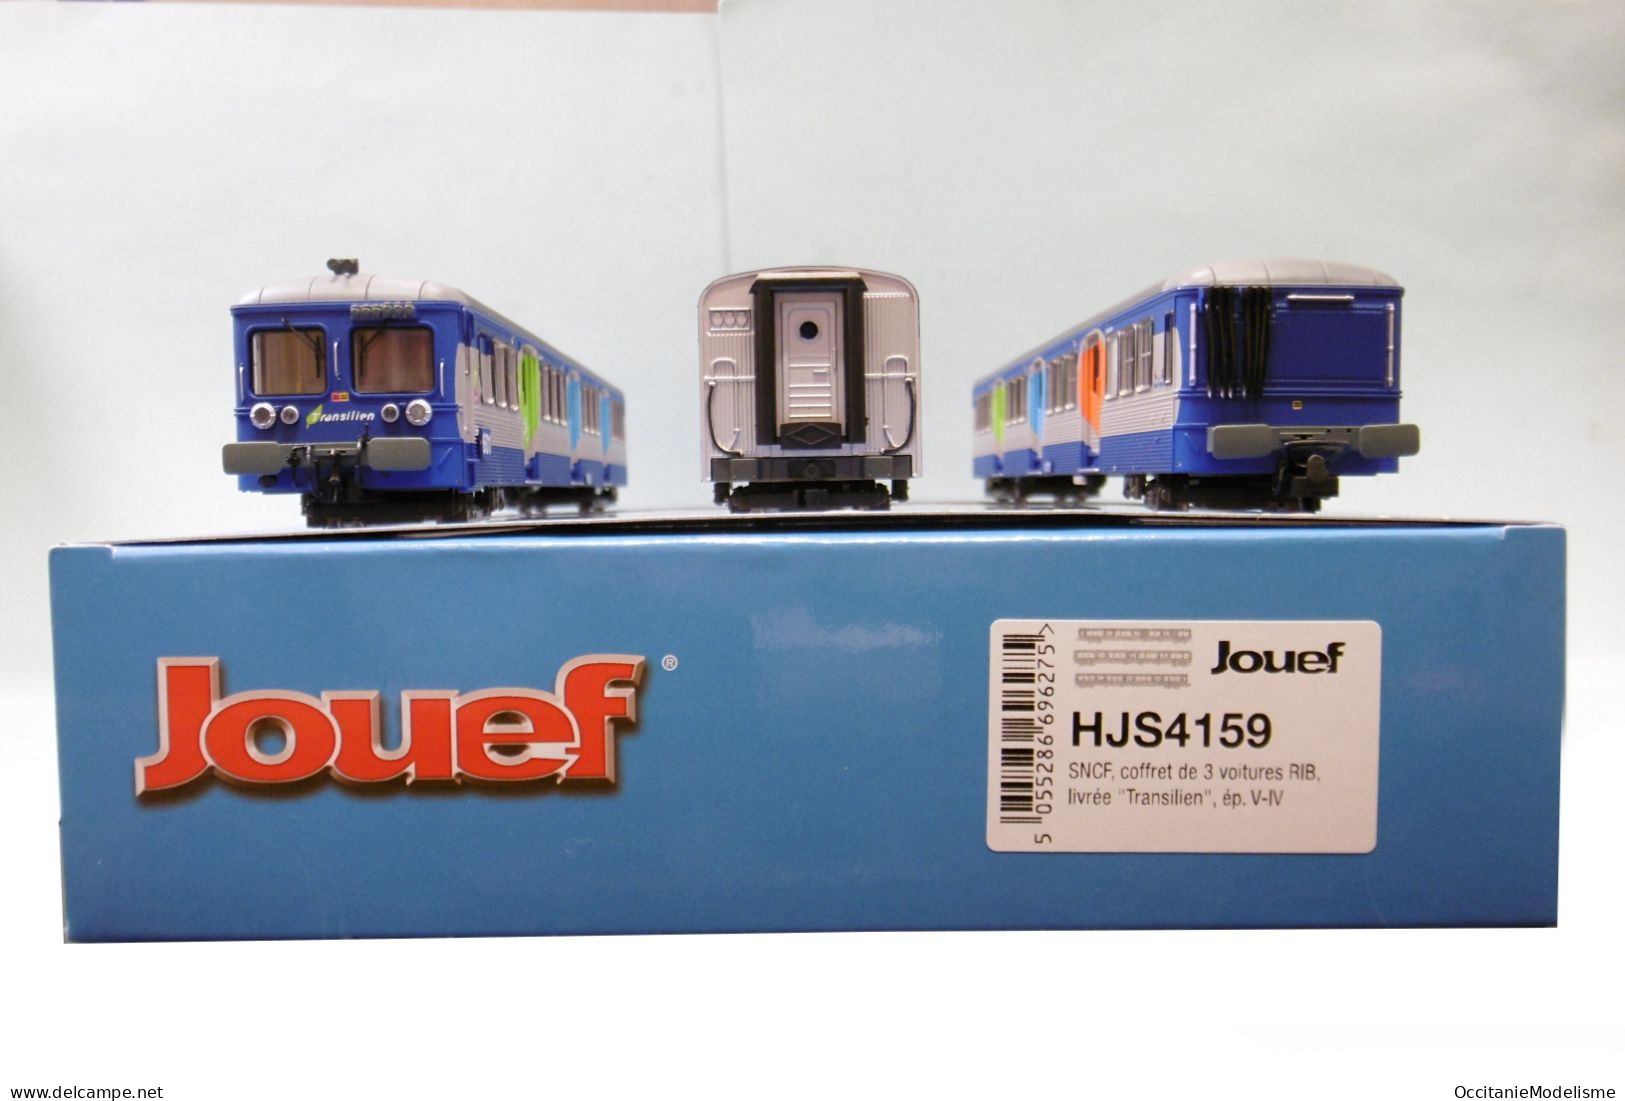 Jouef - Coffret 3 VOITURES RIB Livrée Transilien ép. V / VI SNCF Réf. HJS4159 Neuf NBO HO 1/87 - Passenger Trains